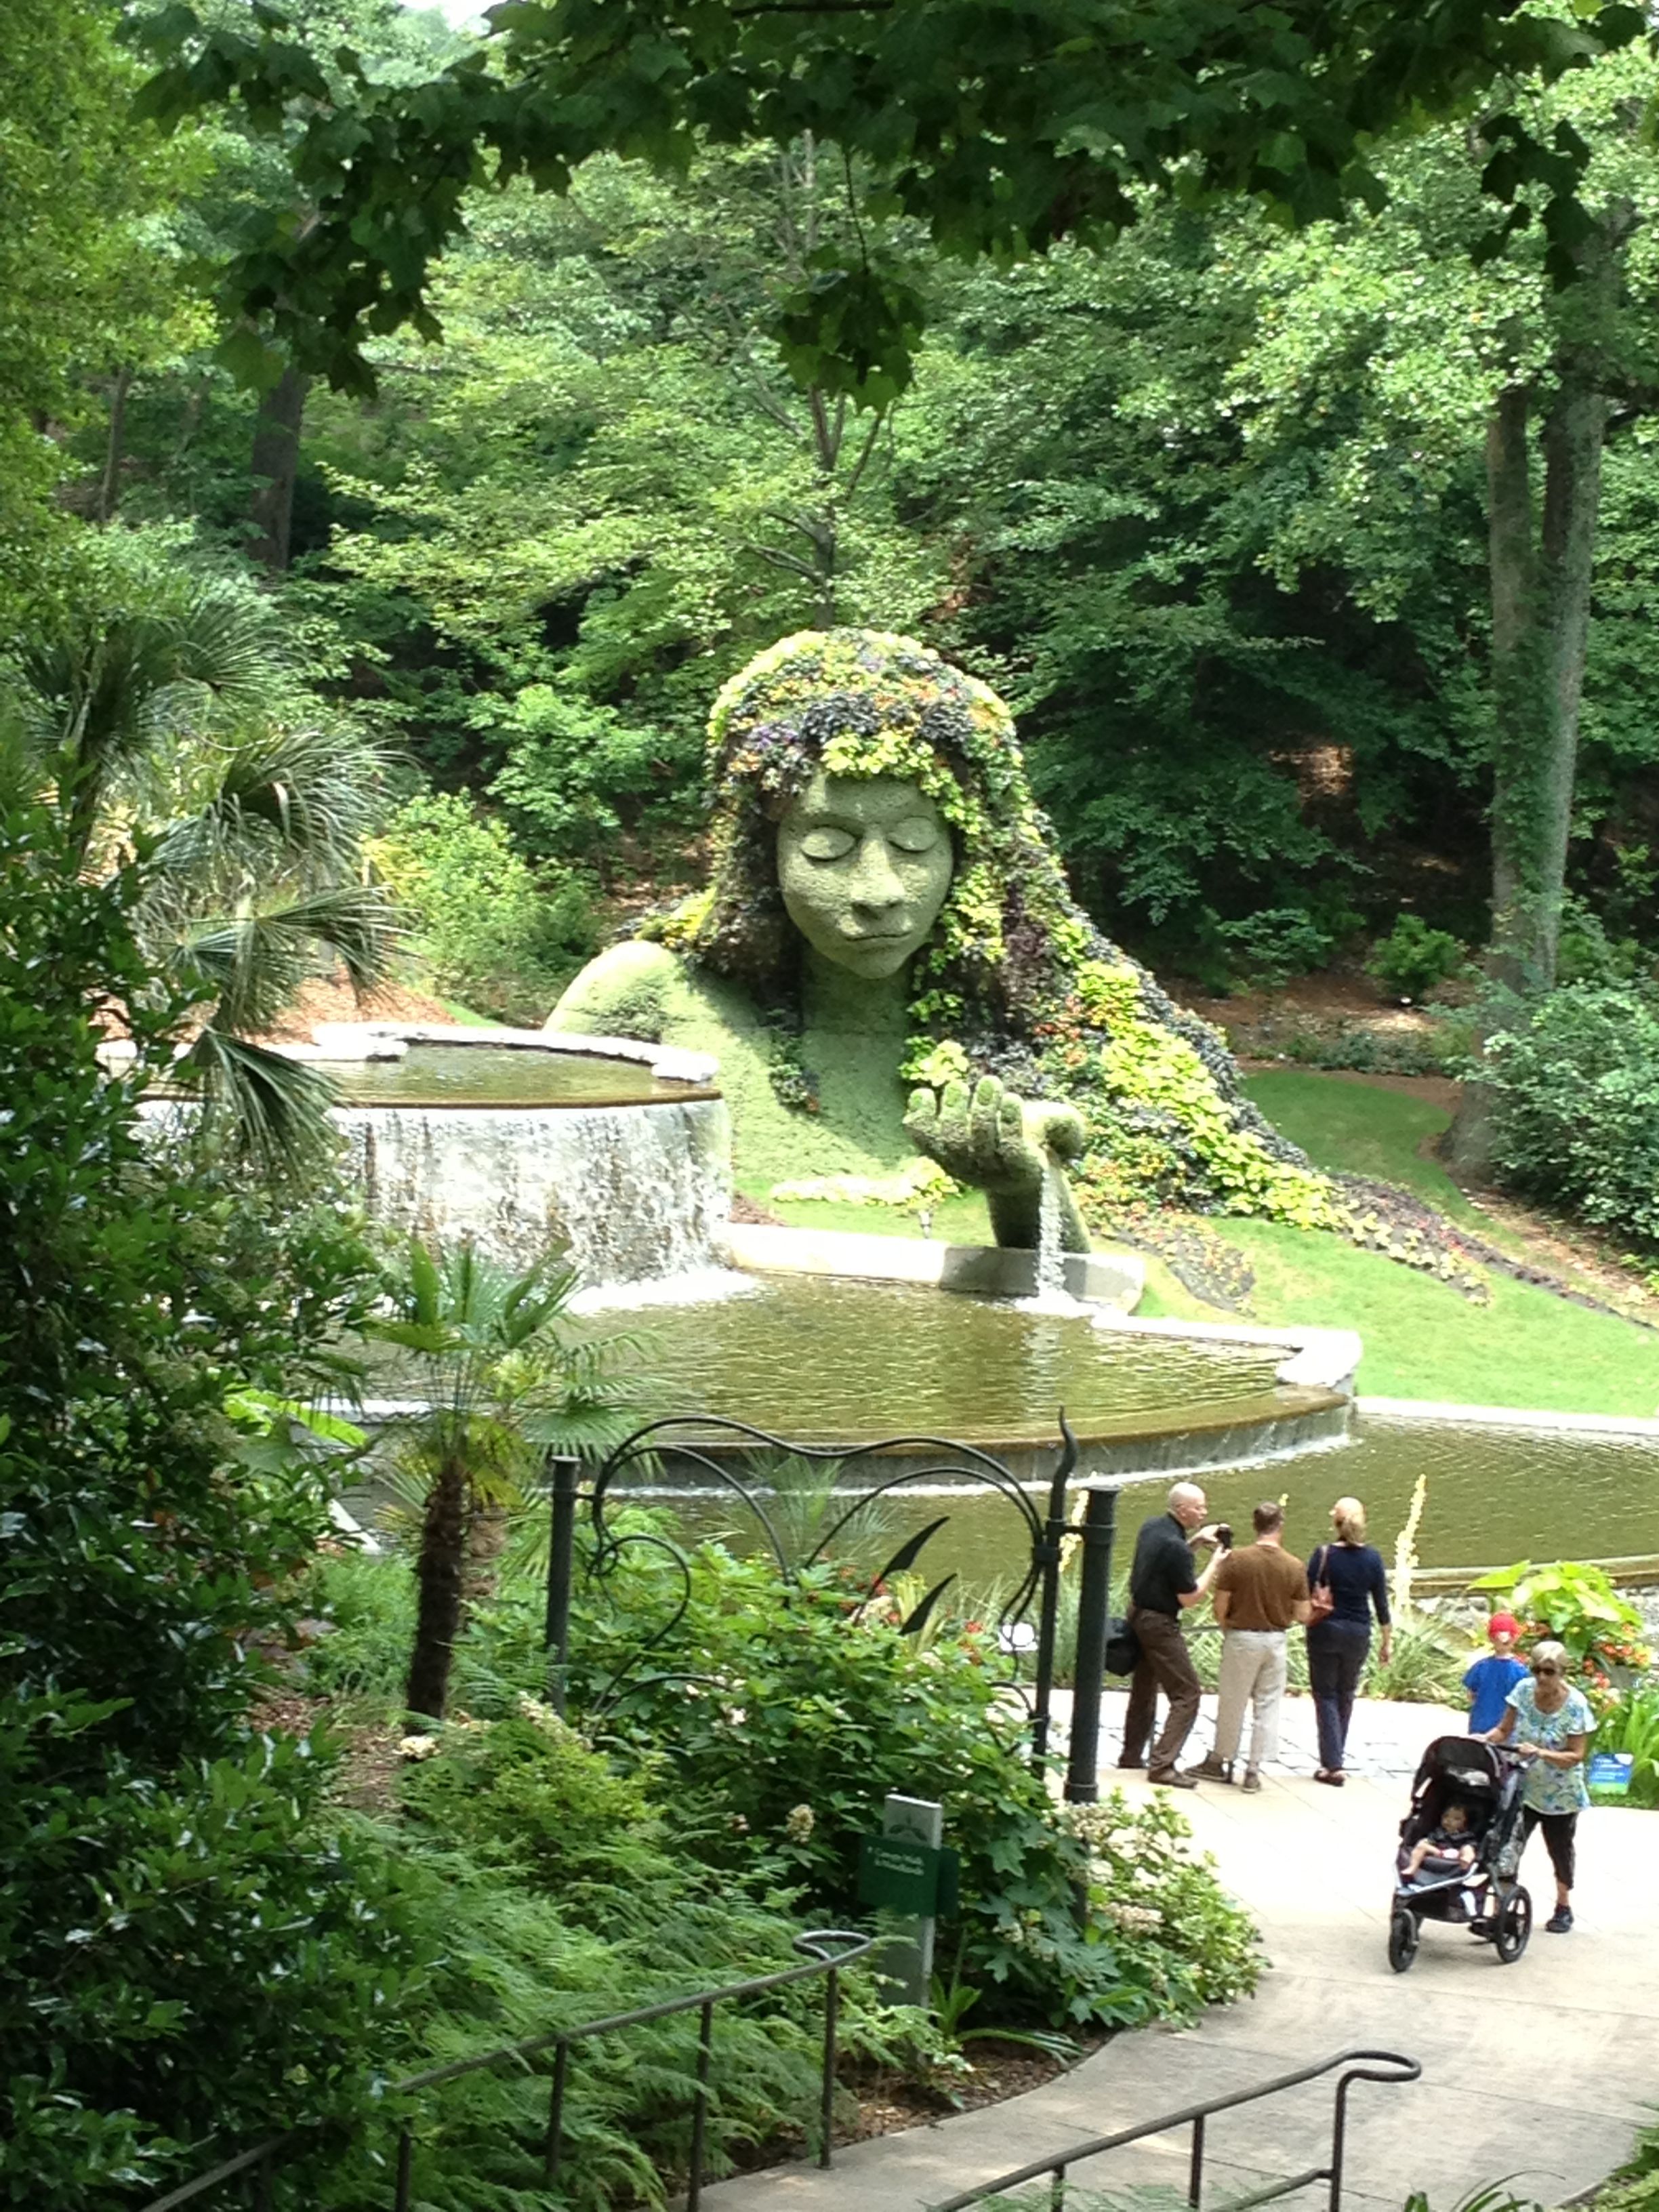 The Savannah Botanical Gardens